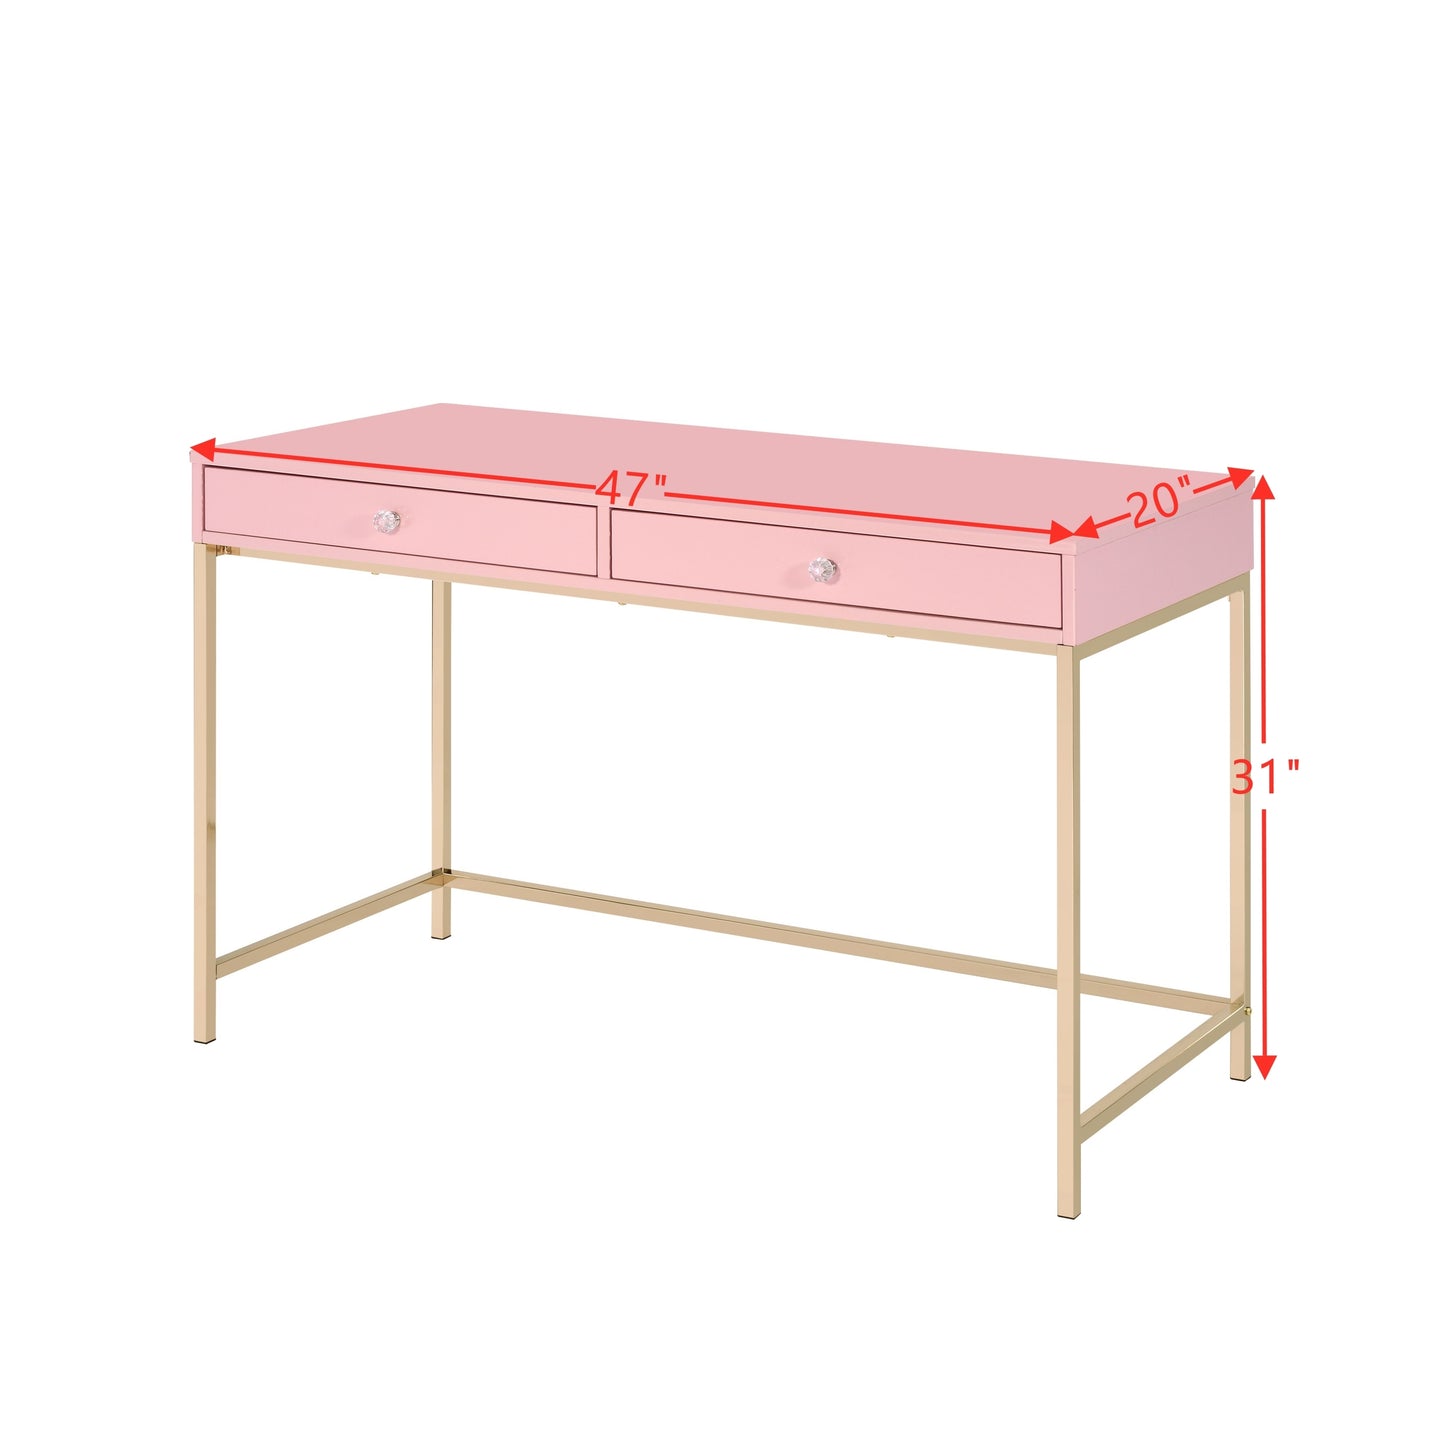 ACME Ottey Writing Desk, Pink High Gloss & Gold Finish 93545